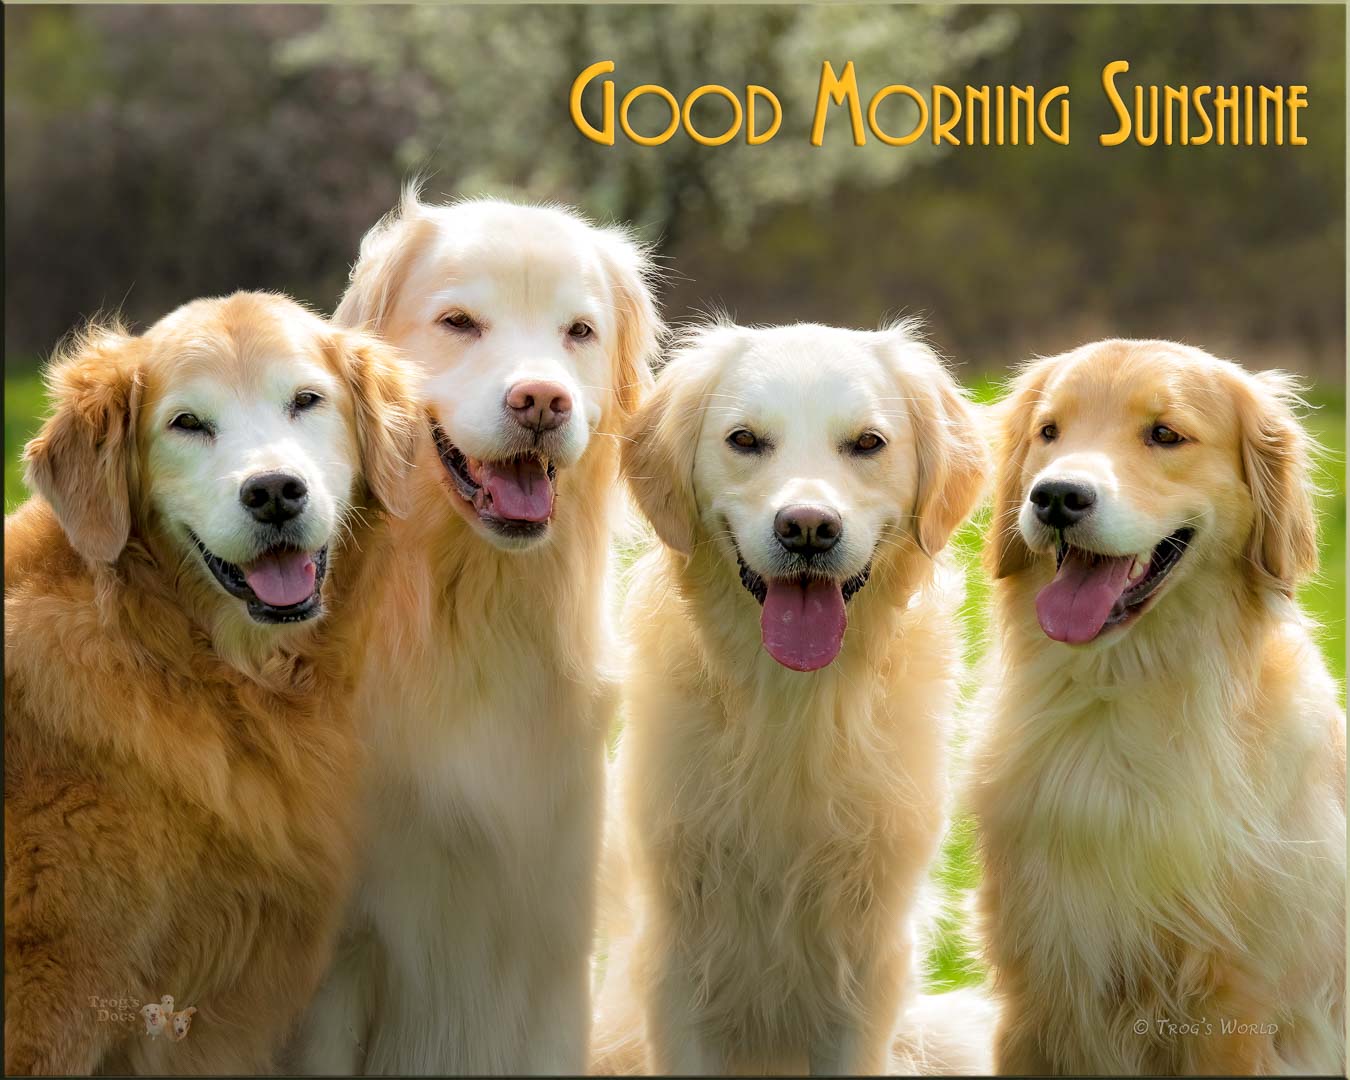 Golden Retrievers smiling in the morning sunshine